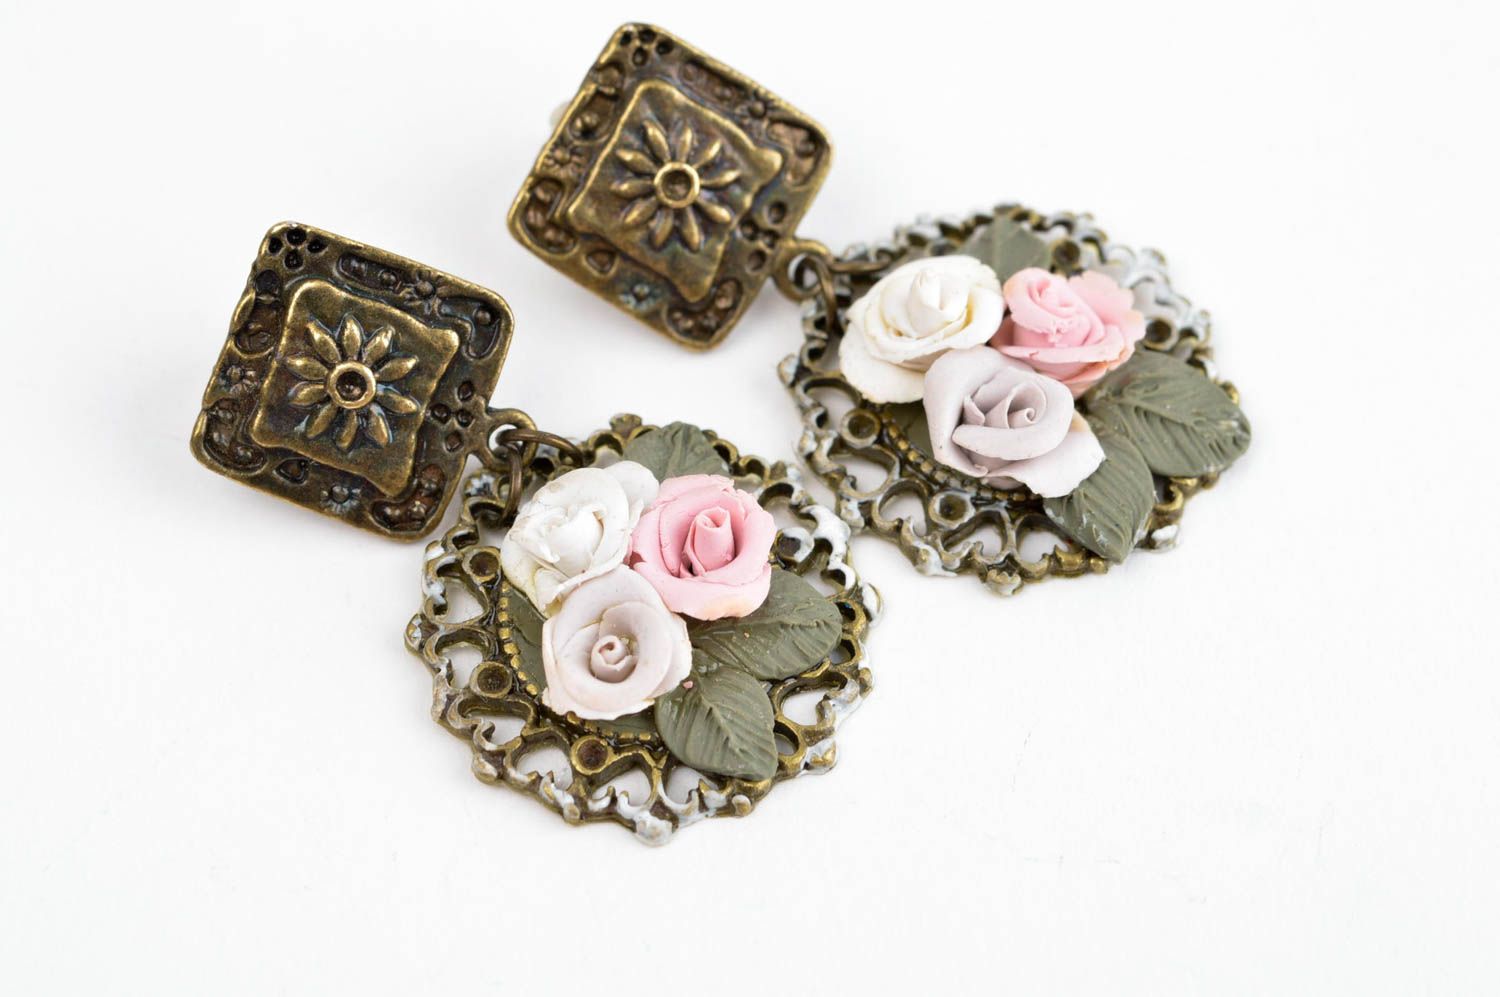 Handmade cute romantic earrings long stylish earrings jewelry in vintage style photo 3